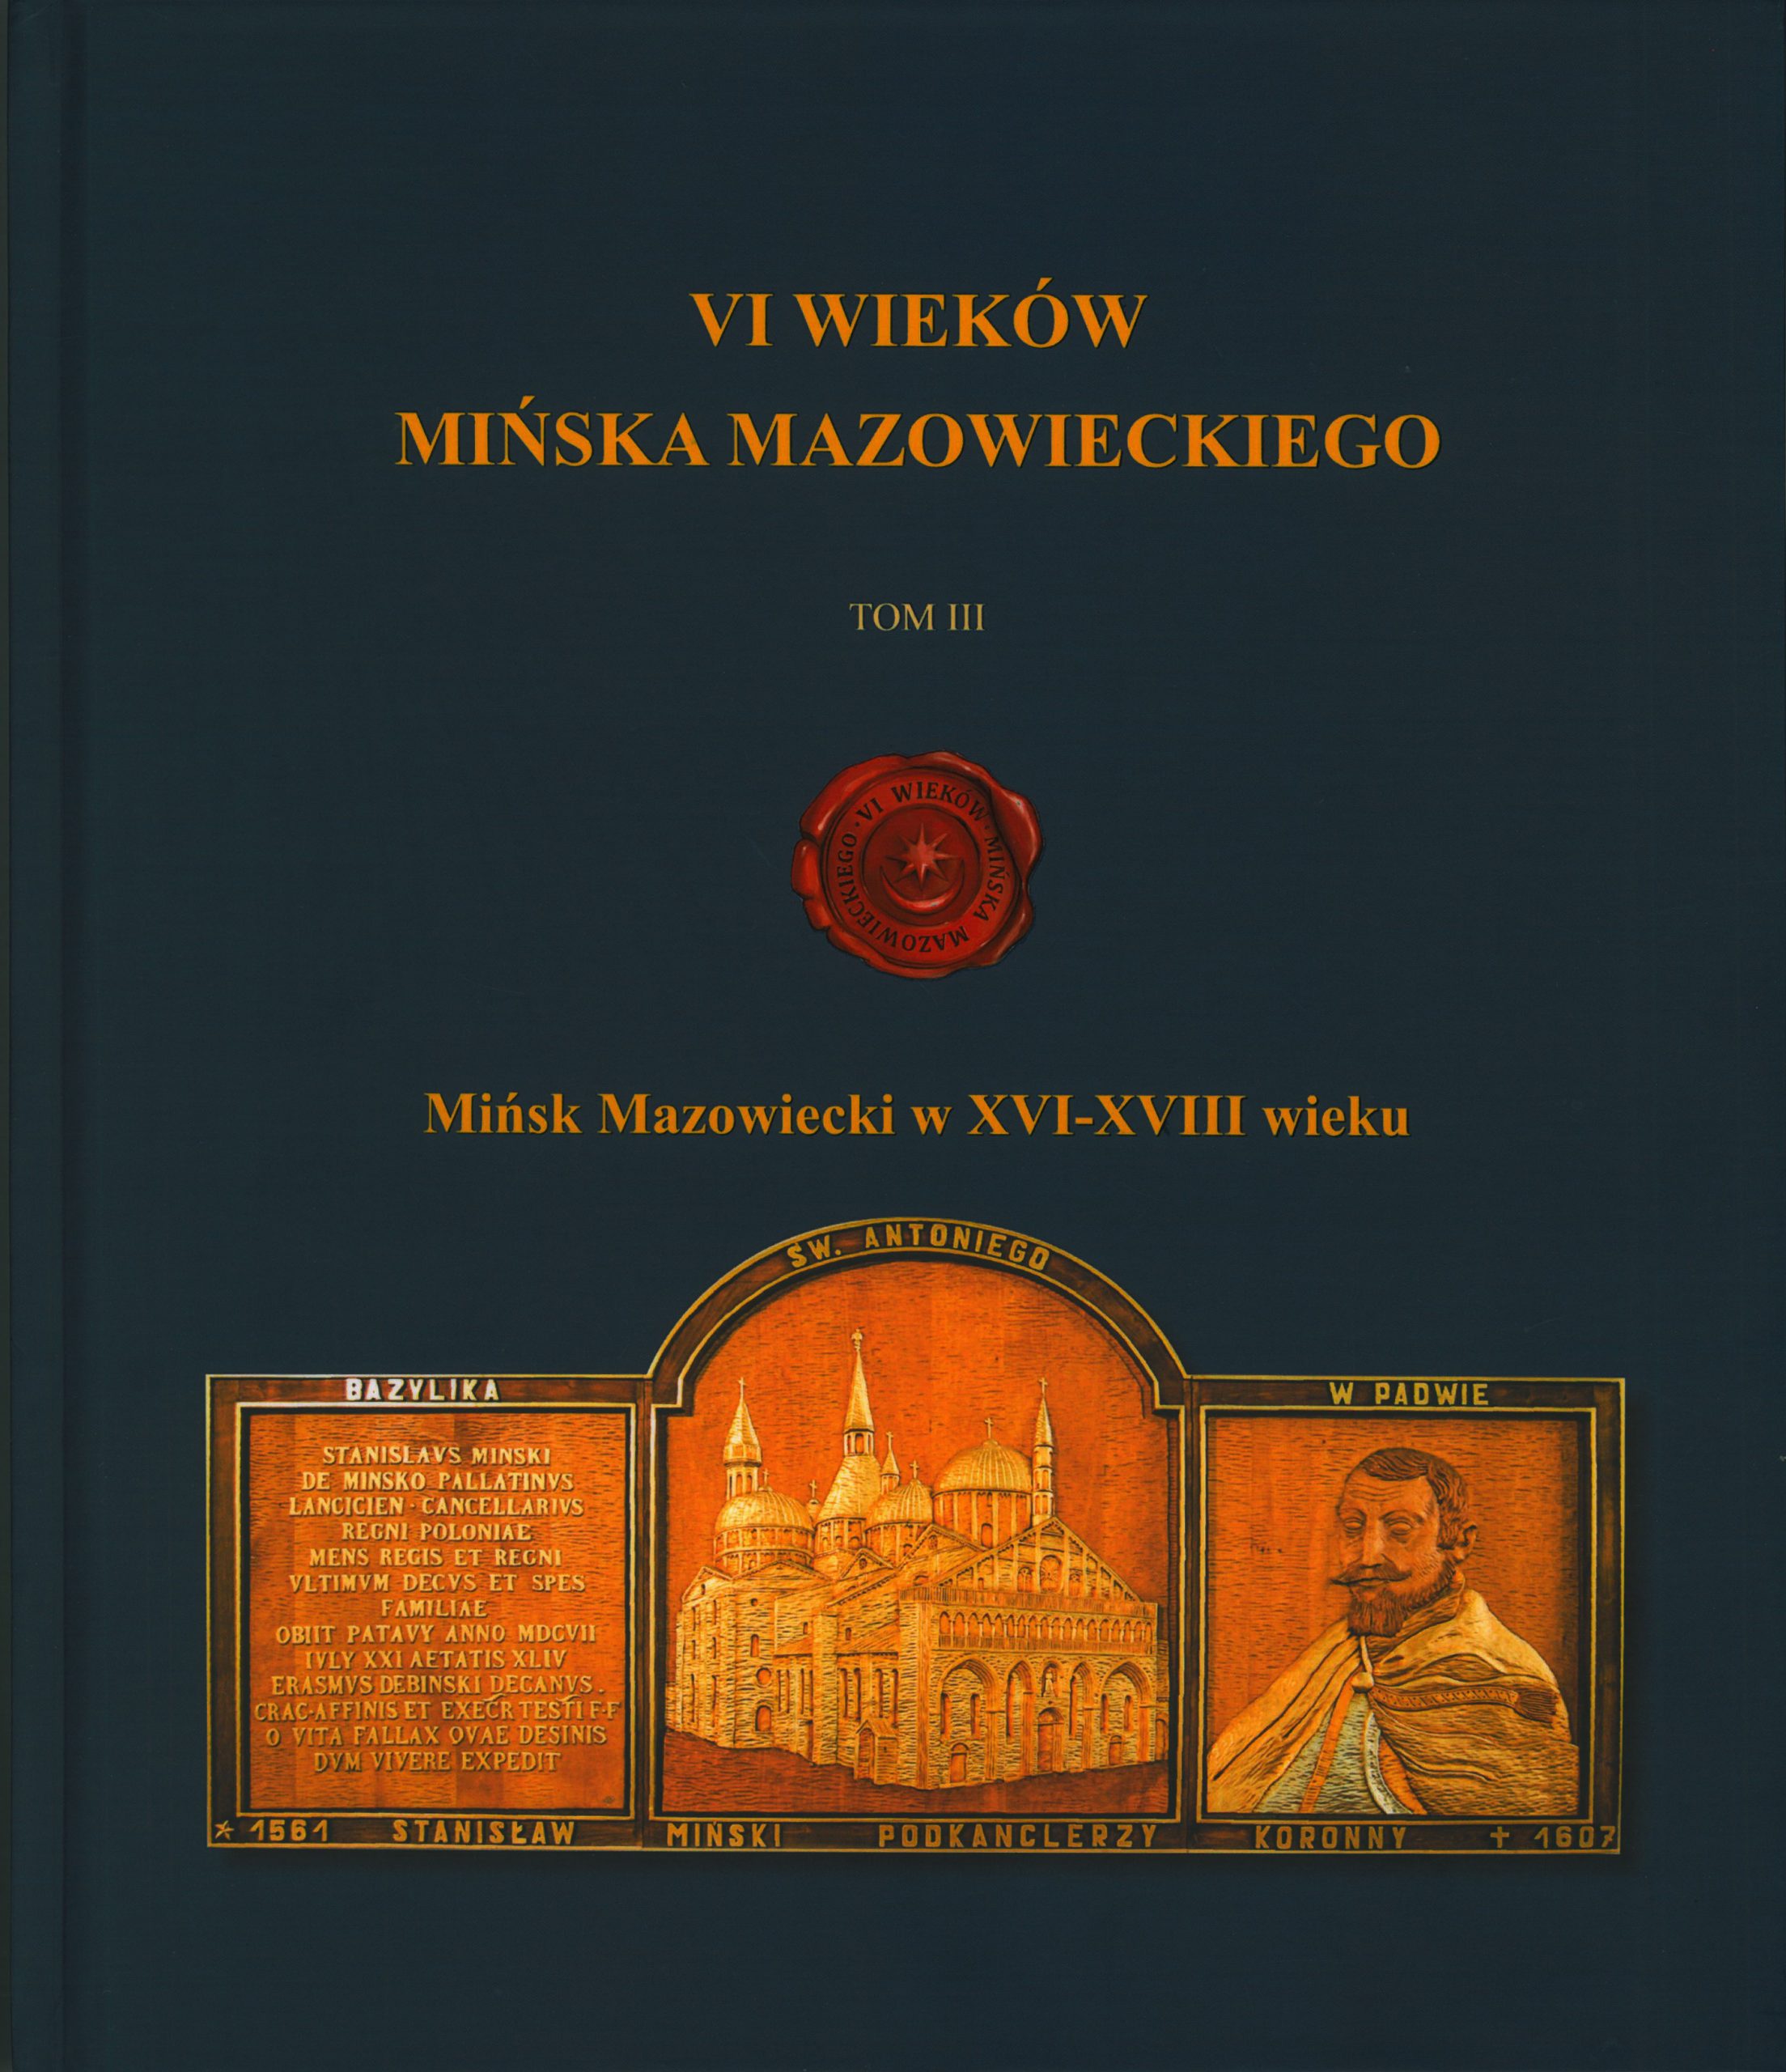 Tom III  wydawnictwa VI wieków Mińska Mazowieckiego „Mińsk Mazowiecki w XVI – XVII wieku”